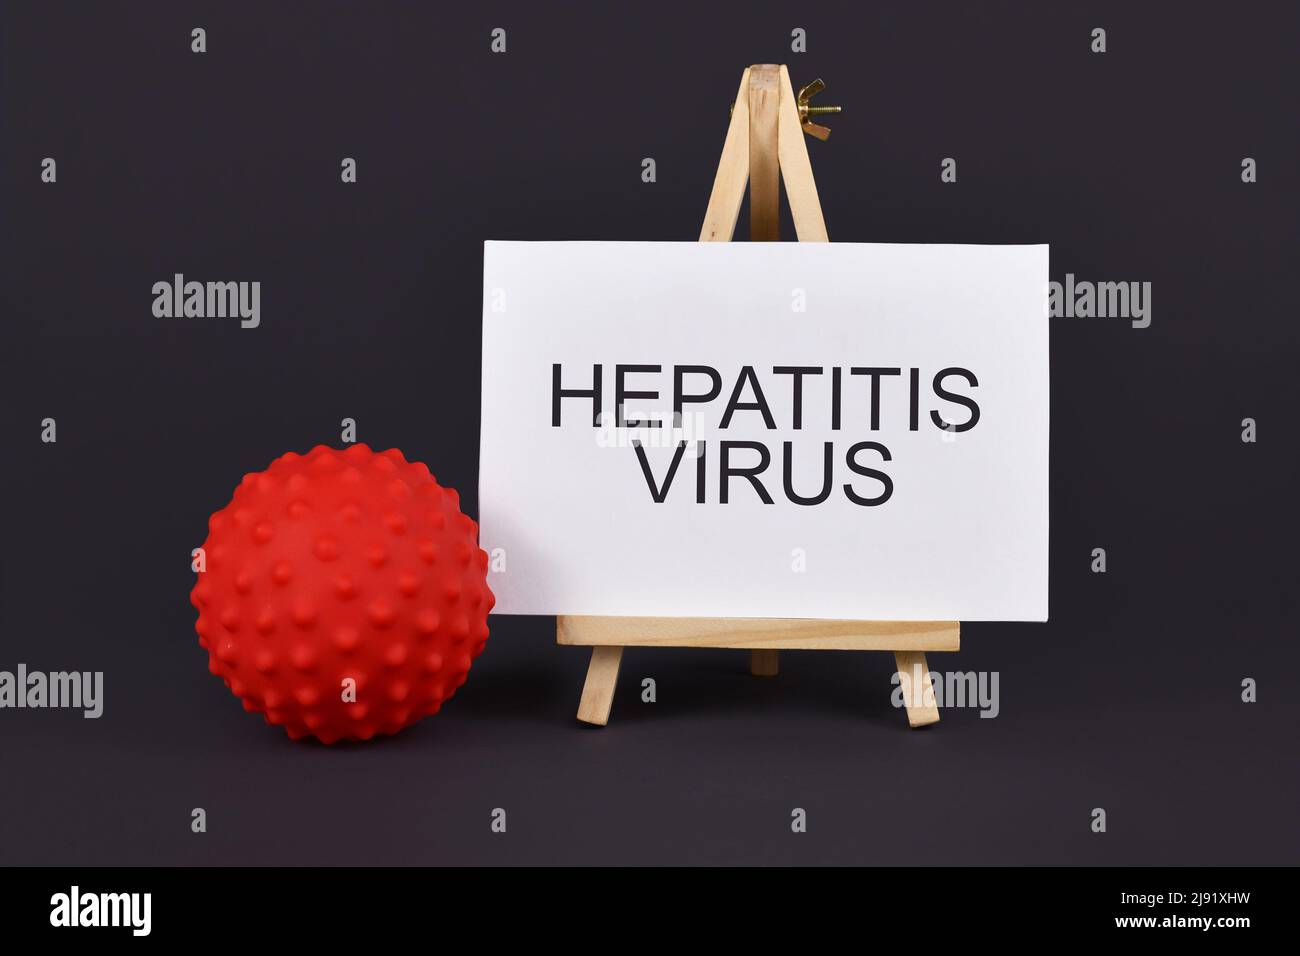 Concepto de hepatitis viral con modelo y texto de virus circulares Foto de stock